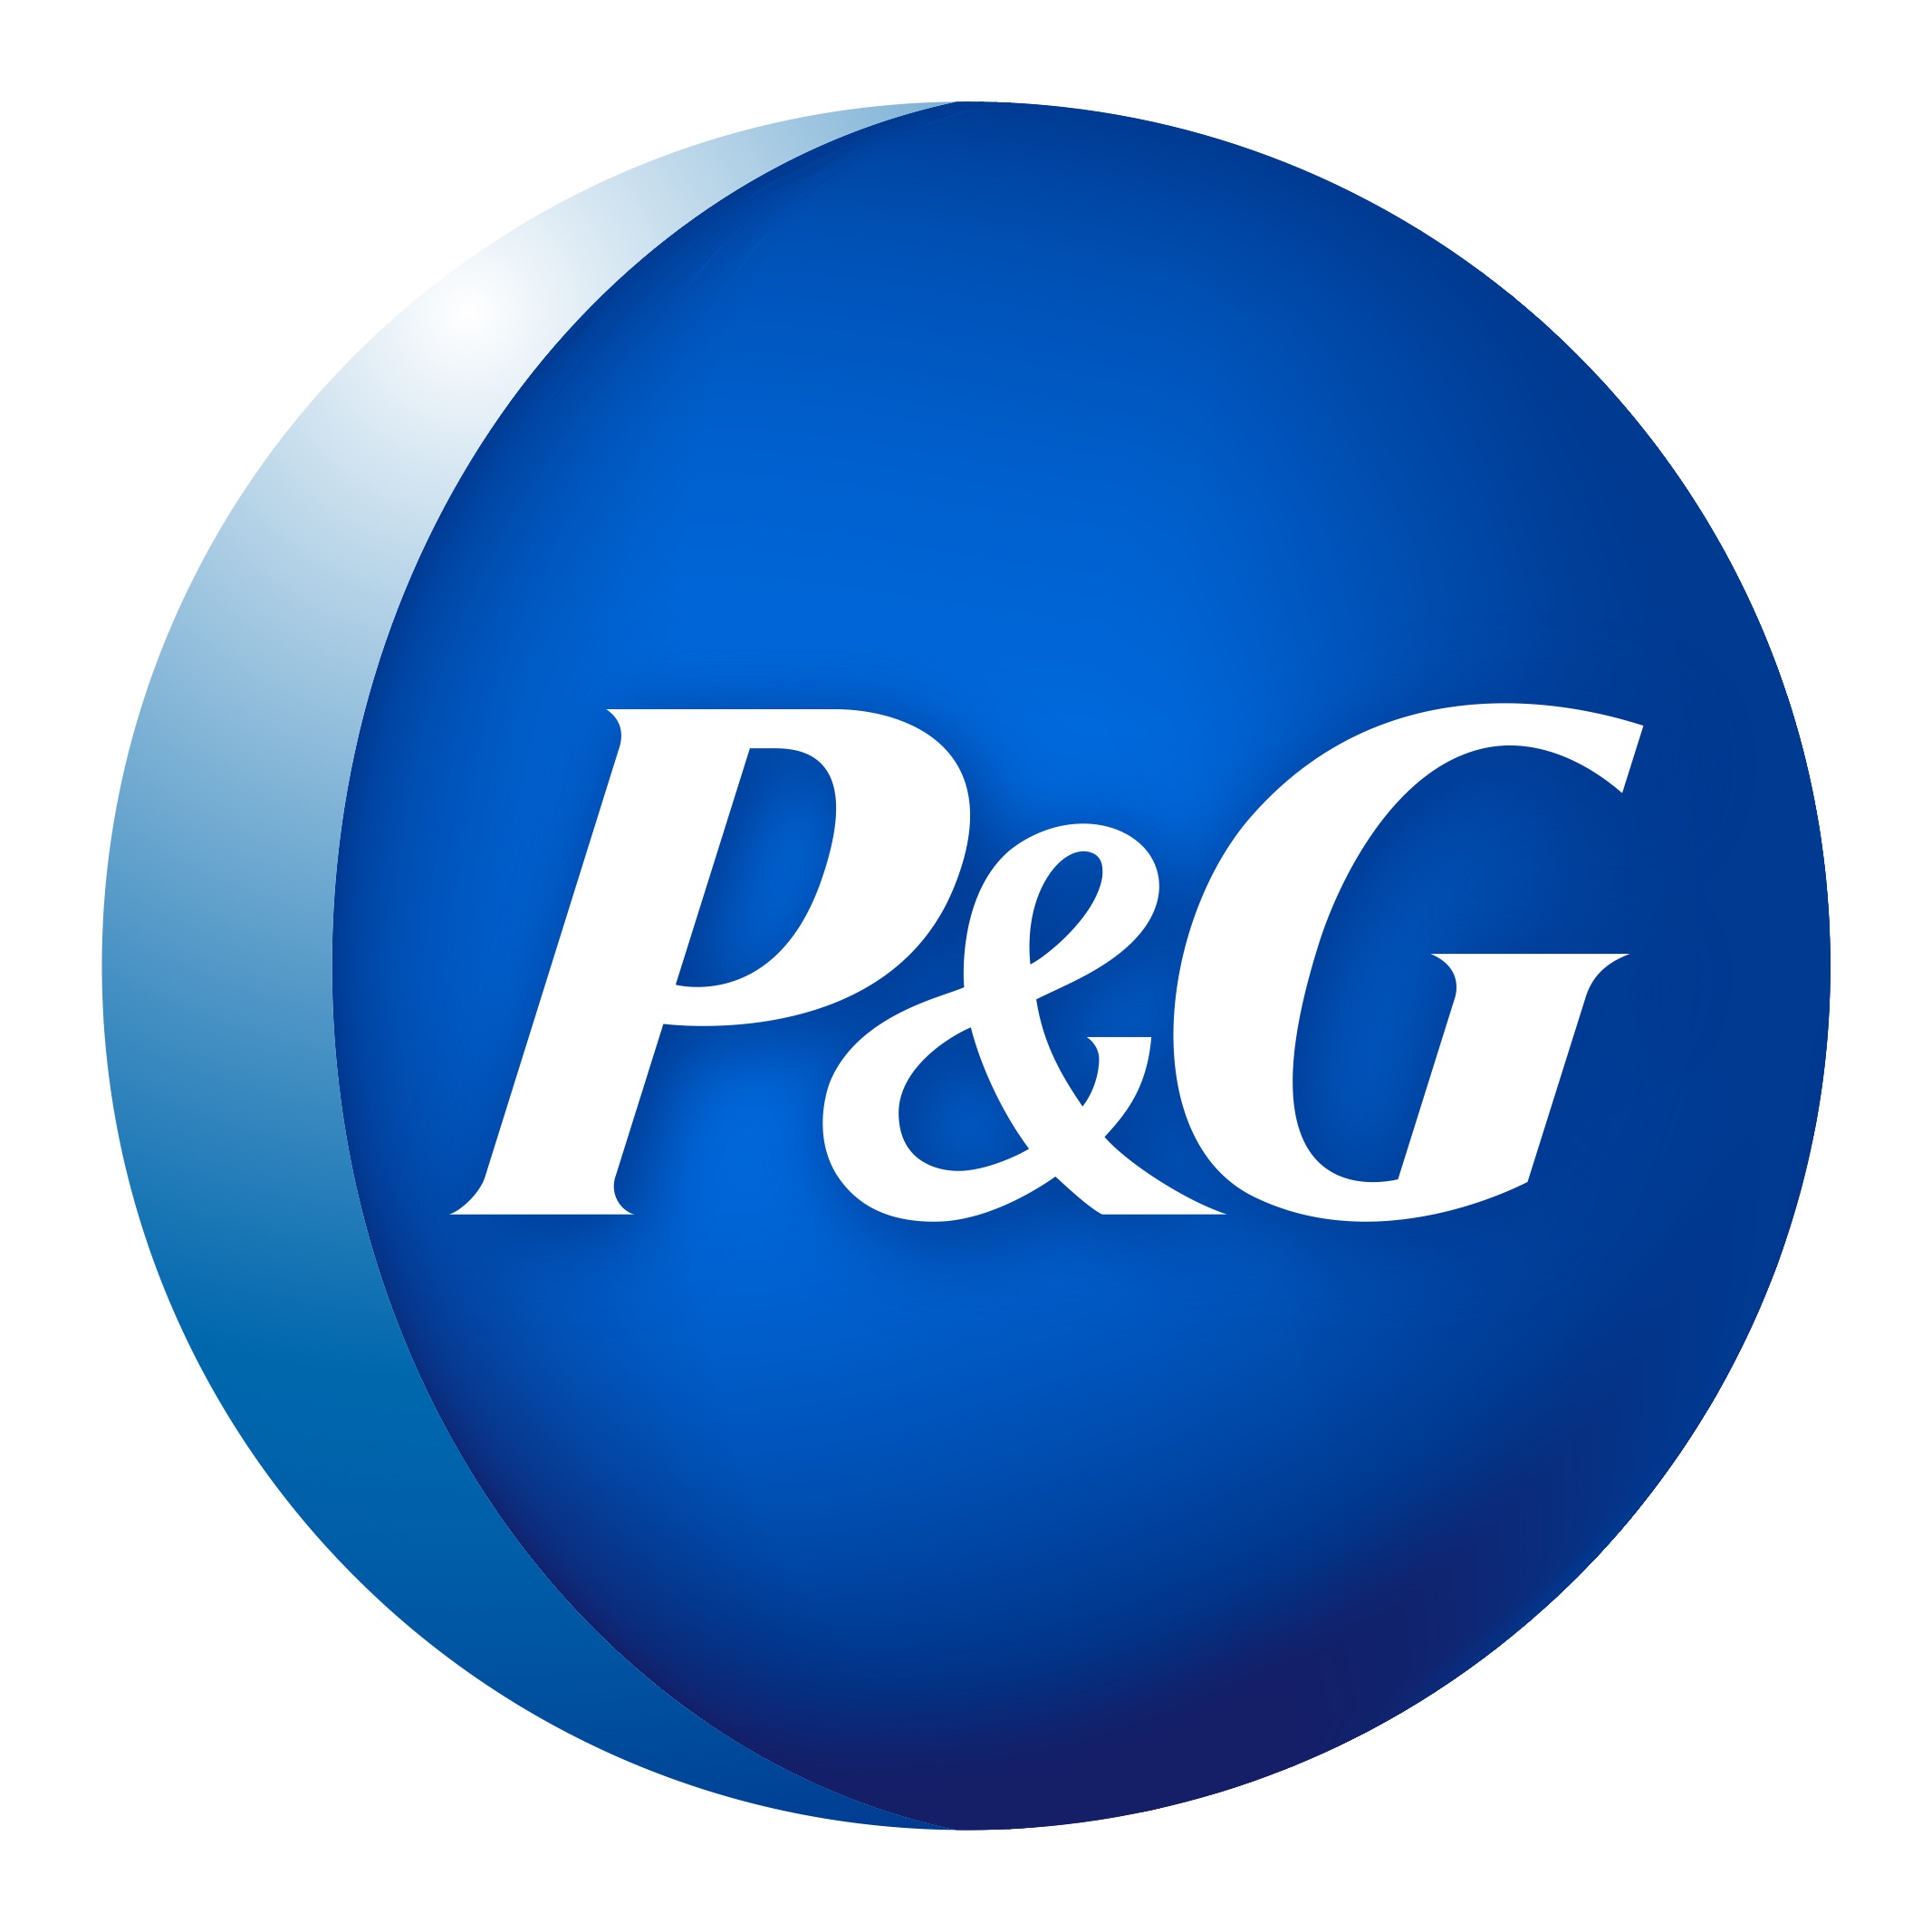 Aunque el logotipo de P&G siempre lo relacionamos con el azul, antes se rumoraba que era satánico, por lo que se tuvo que eliminar su isotipo de luna.